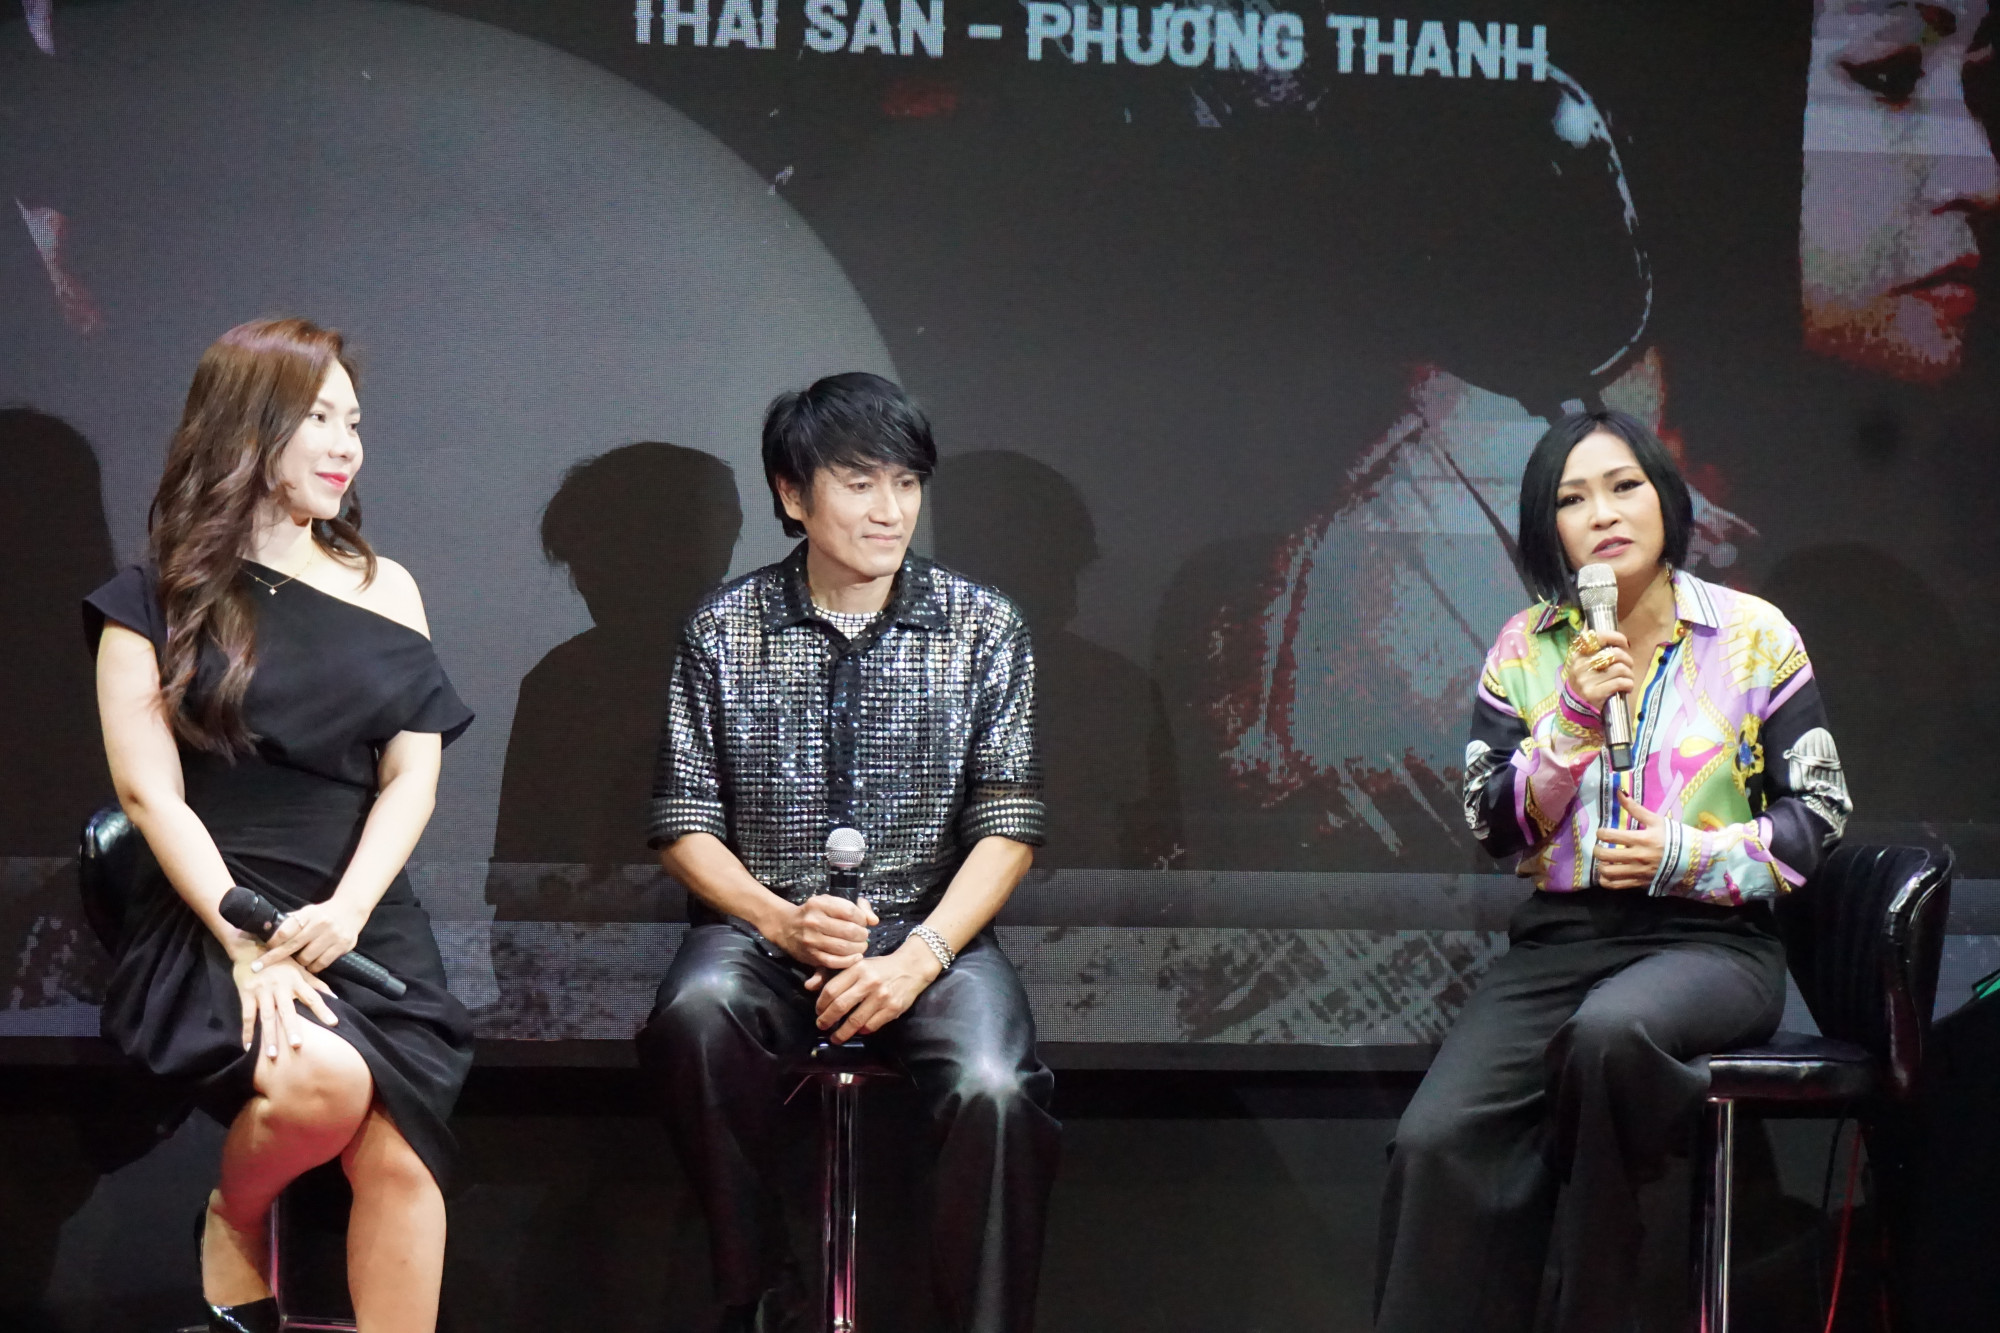 Ca sĩ Thái San (giữa) và ca sĩ Phương Thanh (bìa phải) 